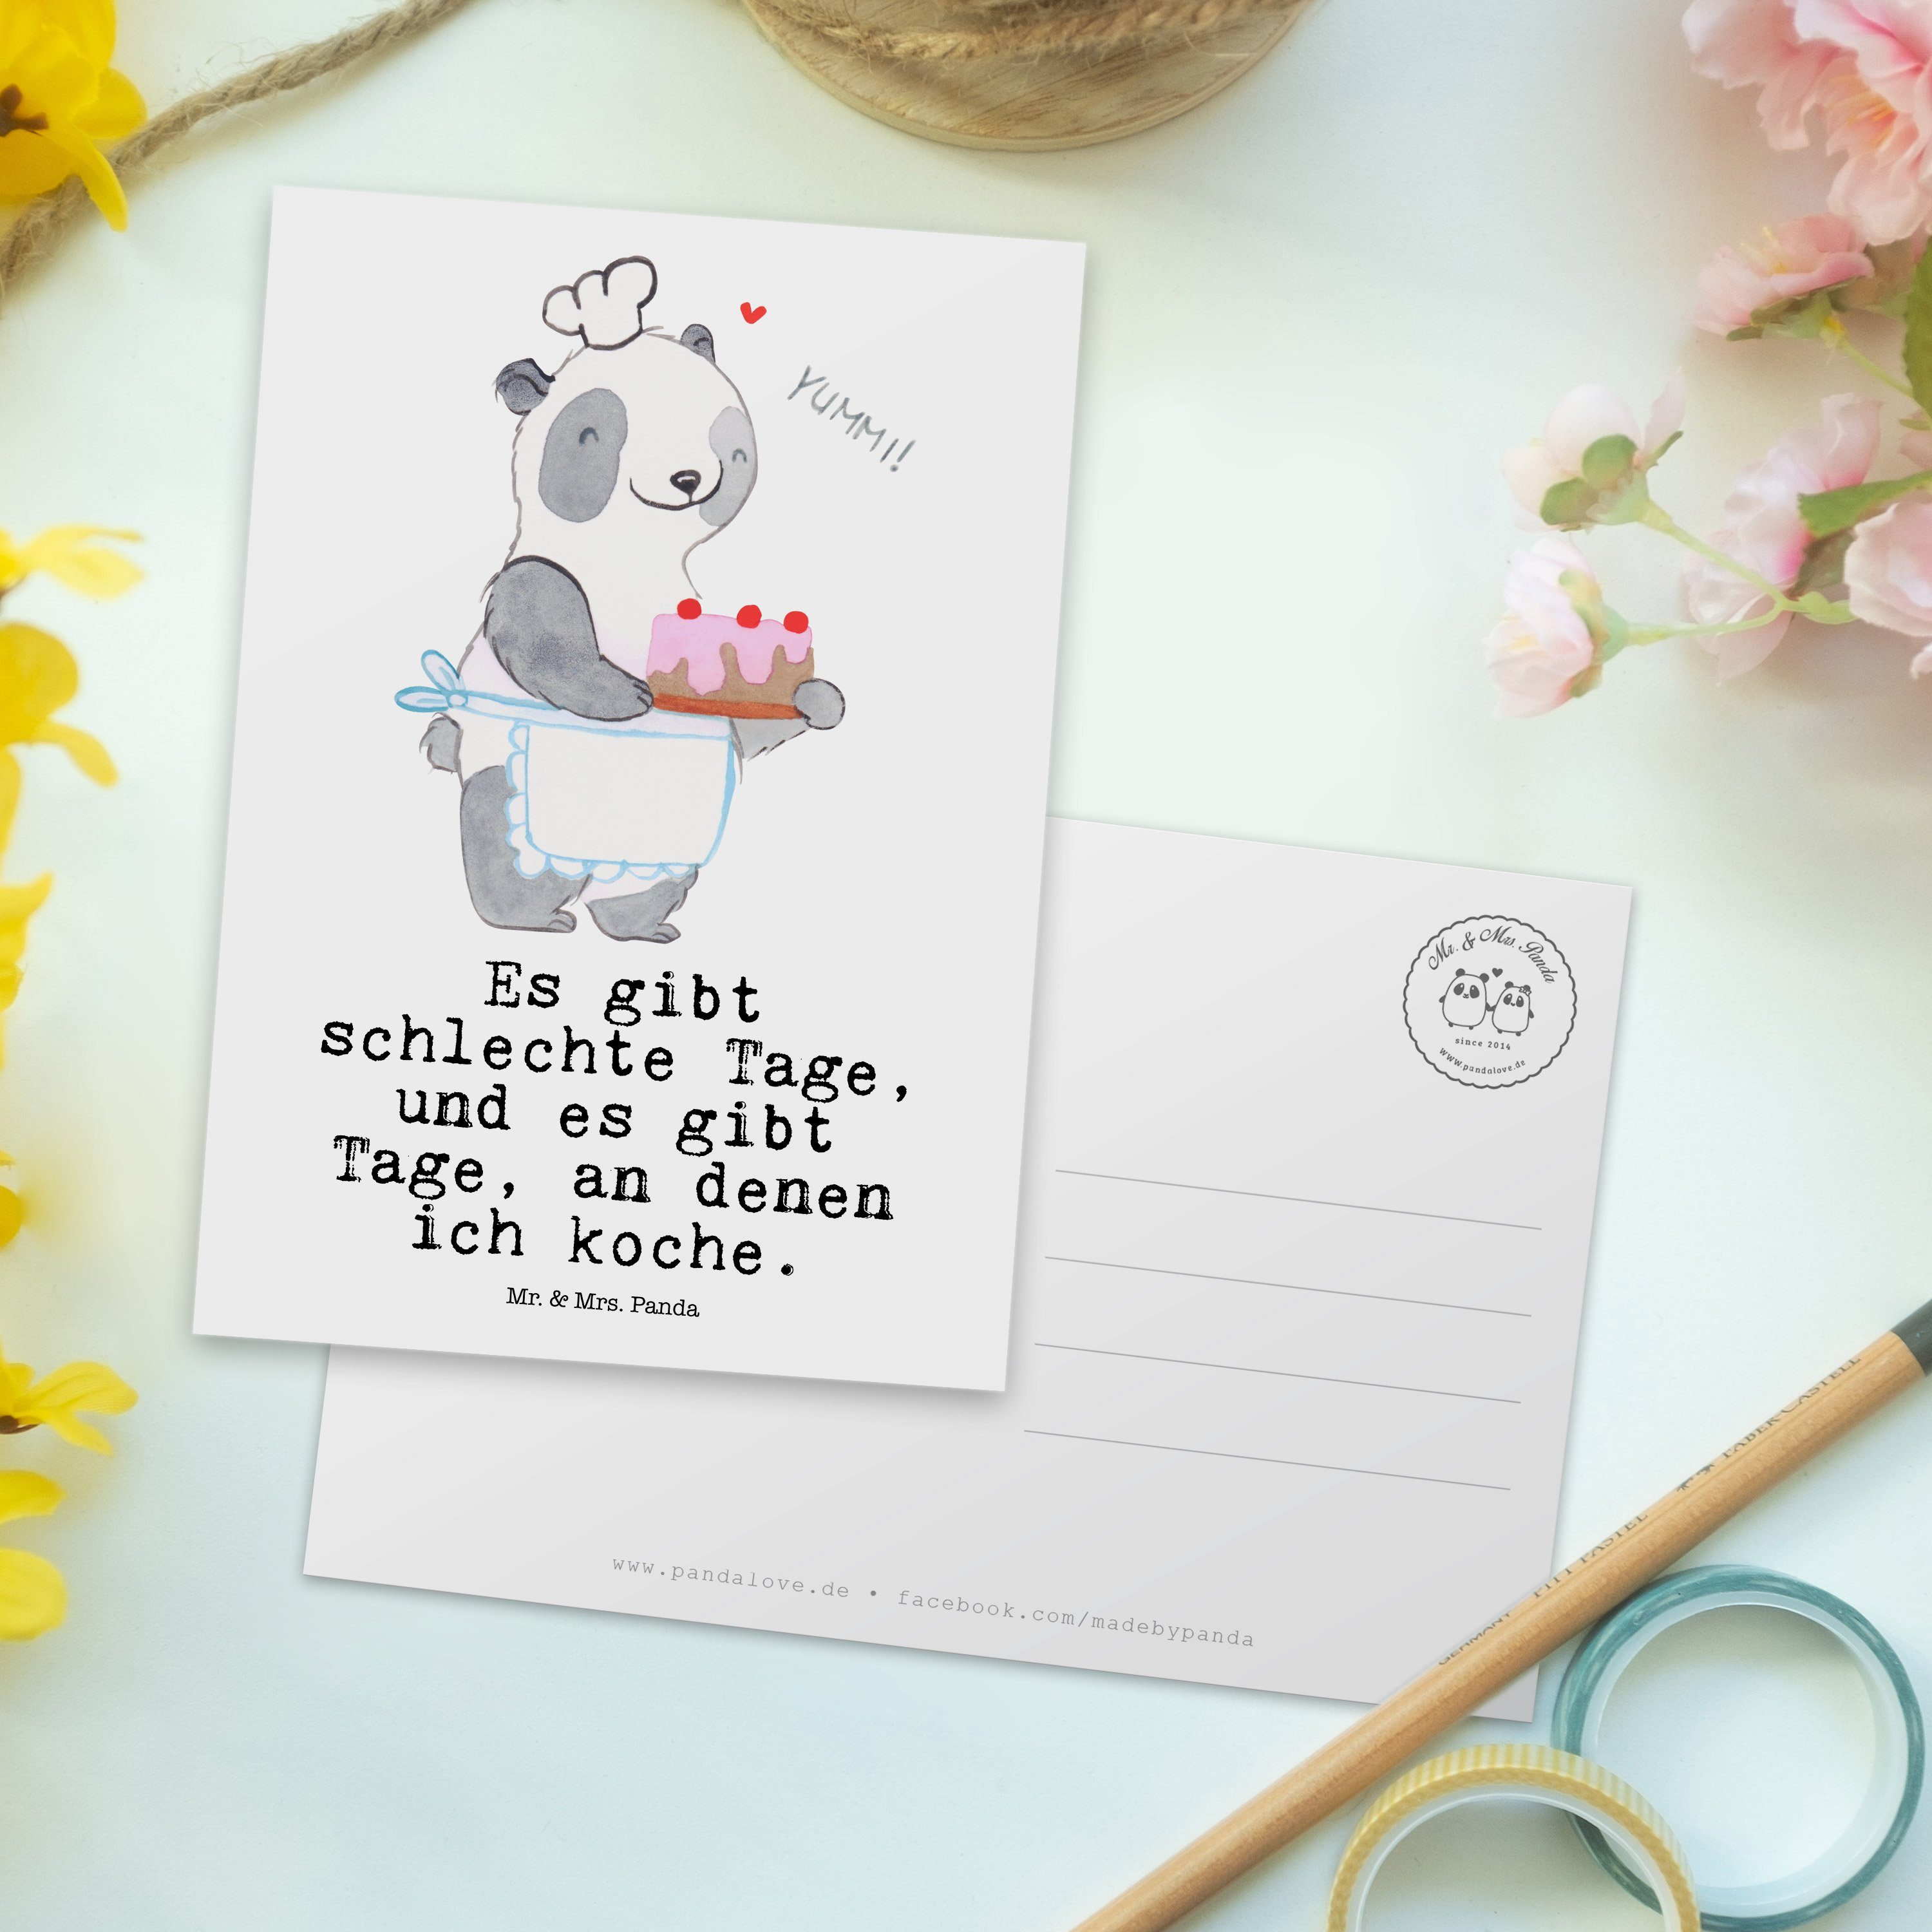 Geburtstagskarte, Tage Kochen & Bär - Geschenk, Hobby, - Weiß Mr. Postkarte Grußkarte Panda Mrs.